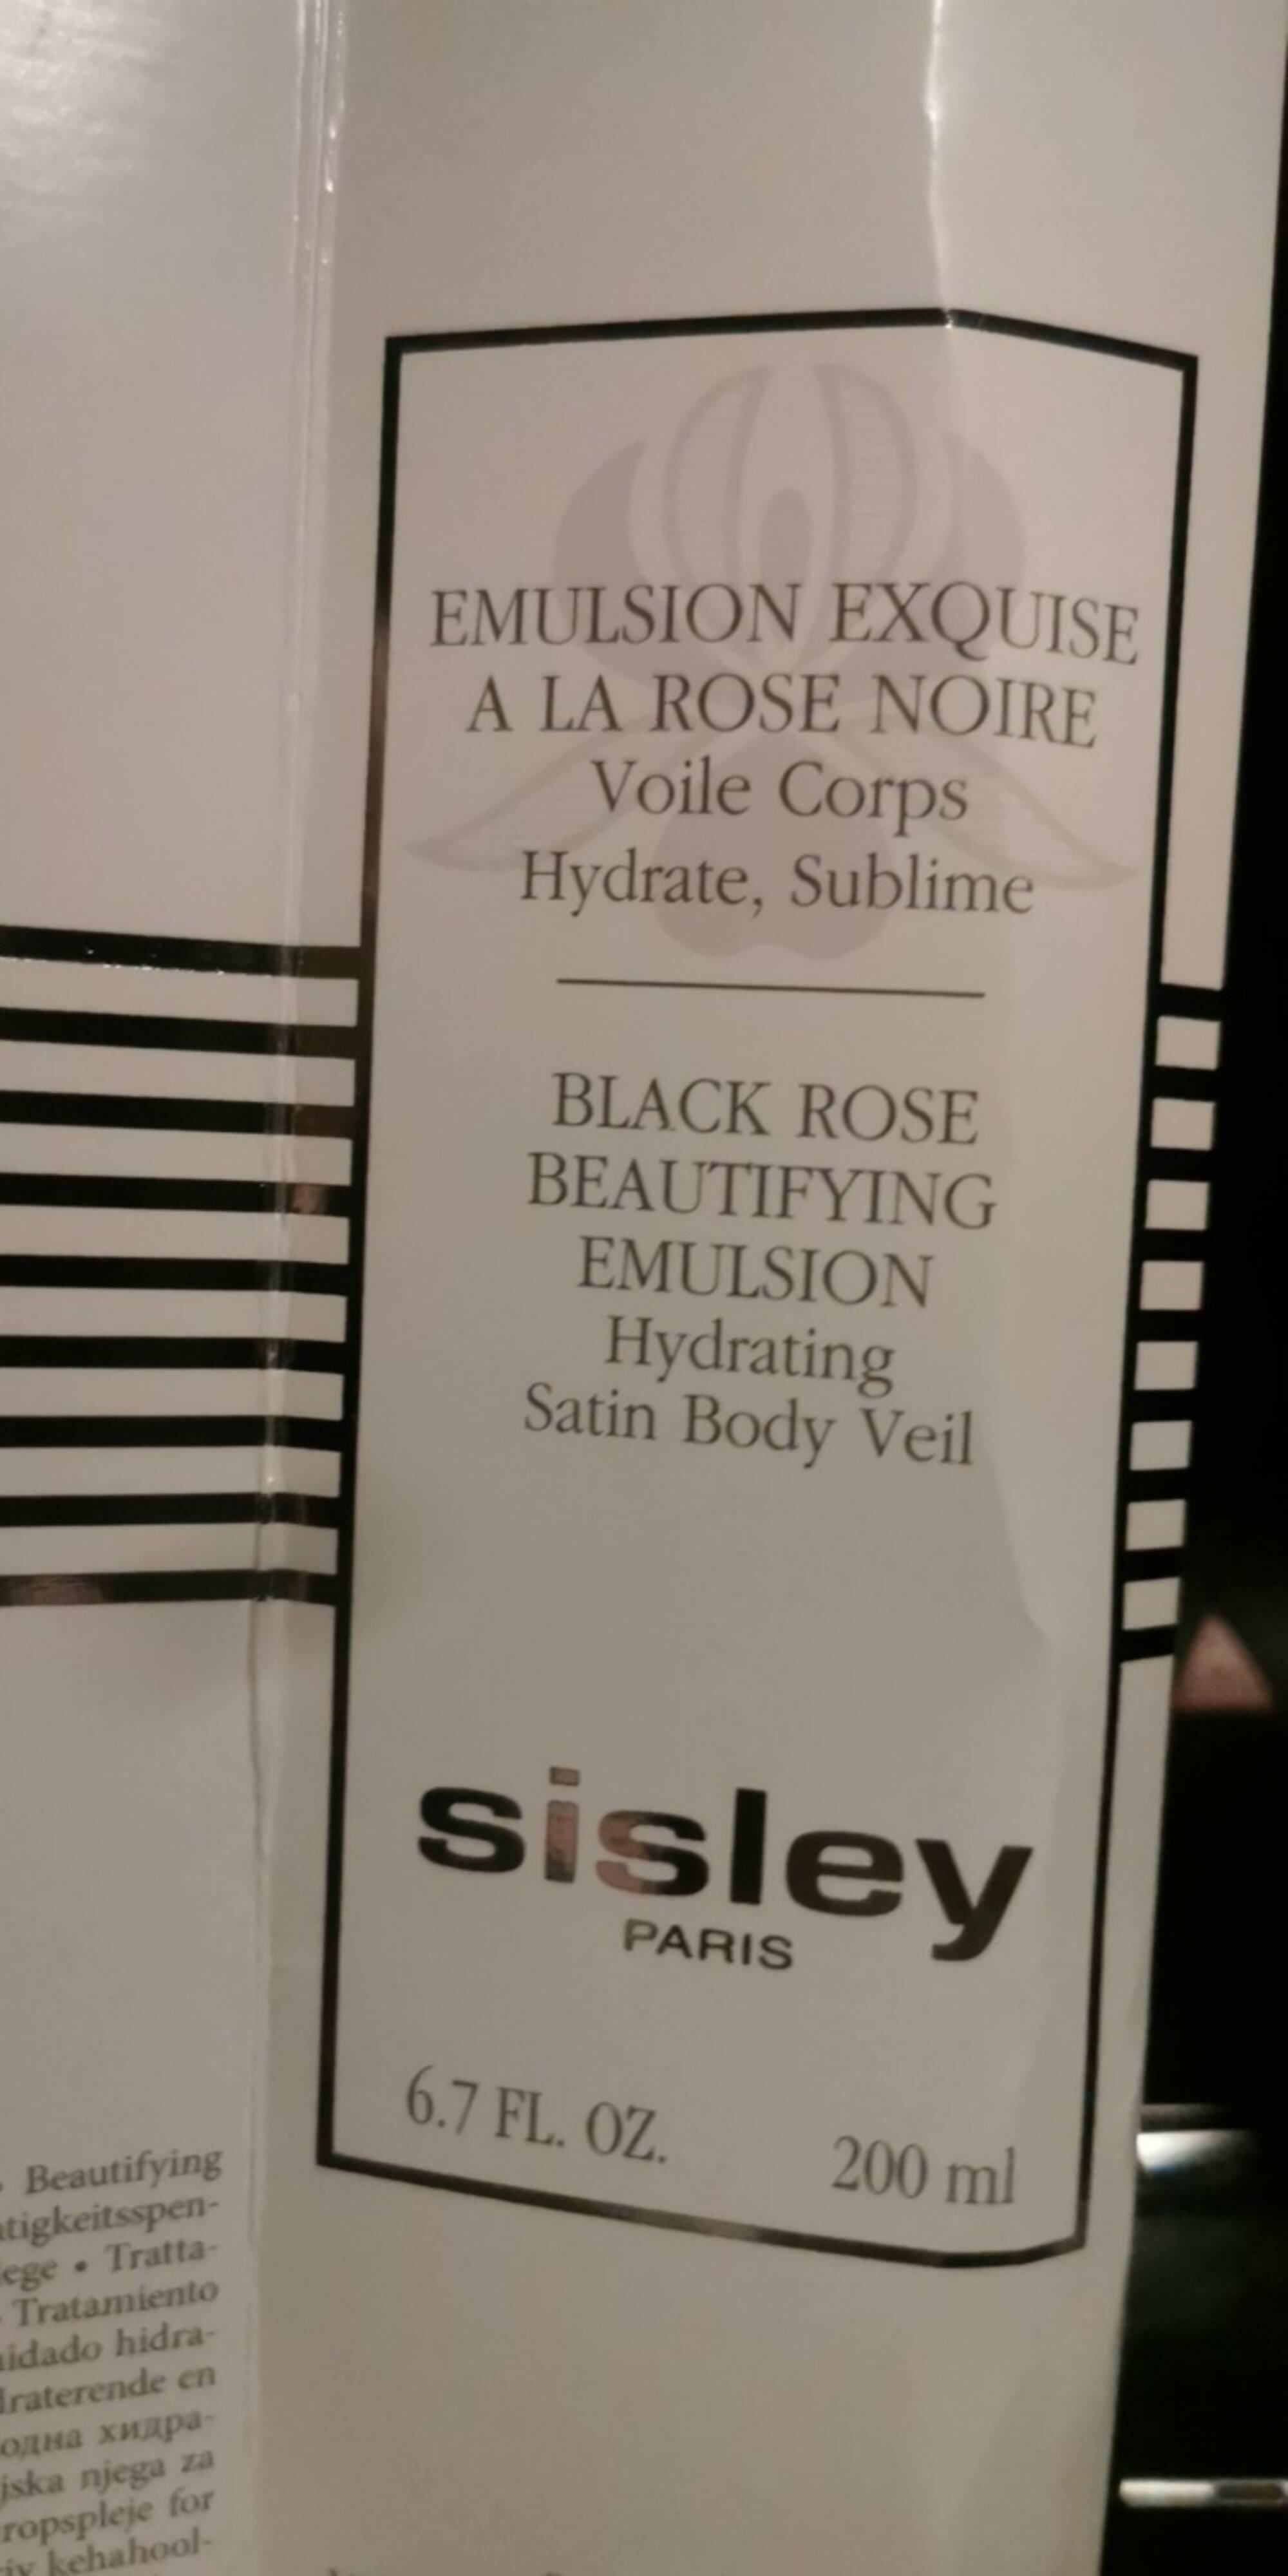 SISLEY - Emulsion exquise à la rose noire 